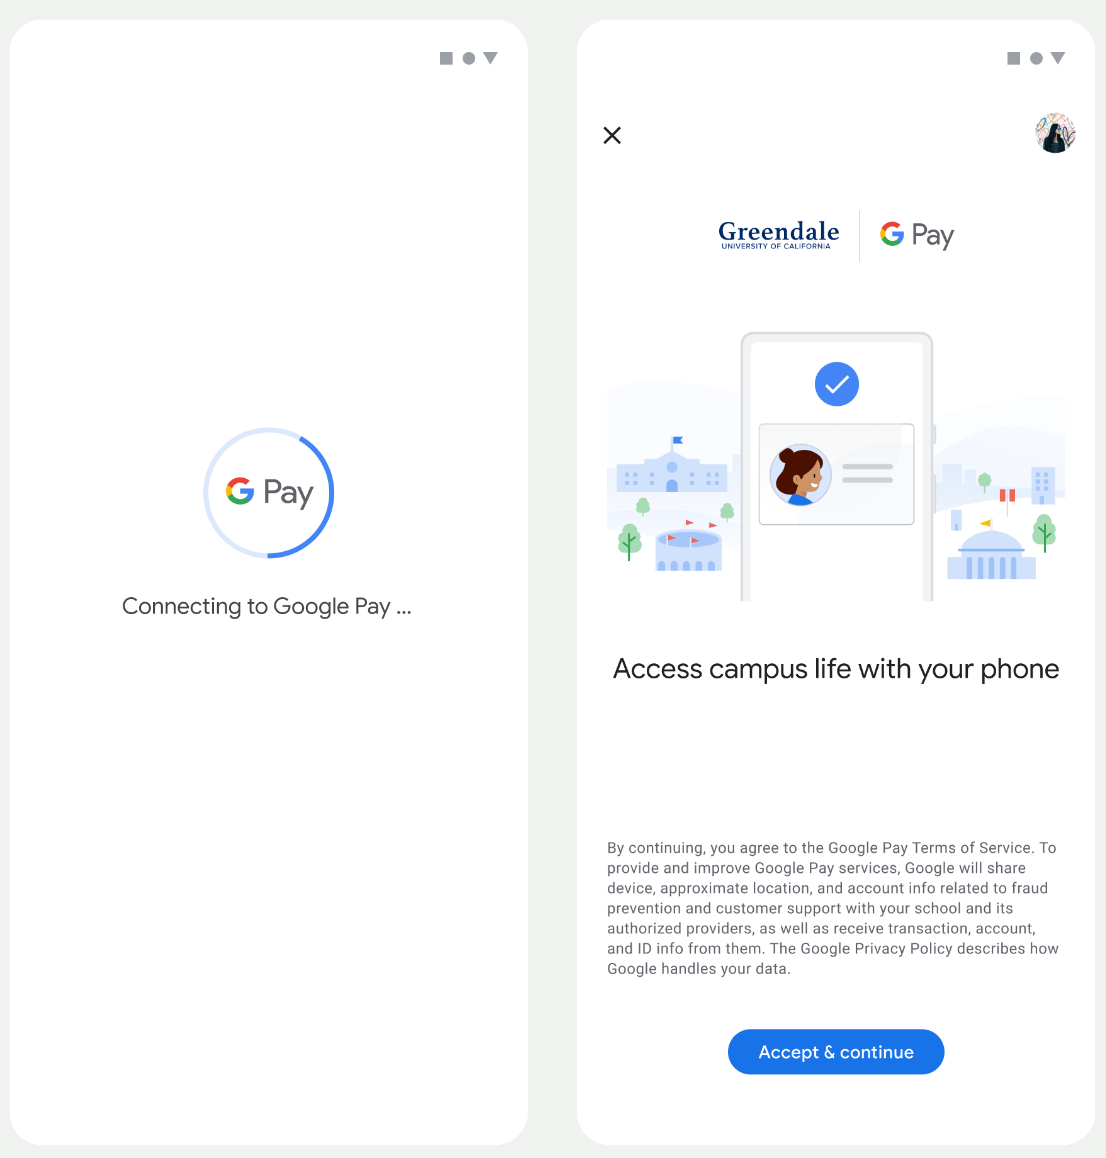 Na pierwszym ekranie aplikacja łączy się z Portfelem Google. Na drugim ekranie użytkownik akceptuje Warunki korzystania z usługi i przechodzi dalej.